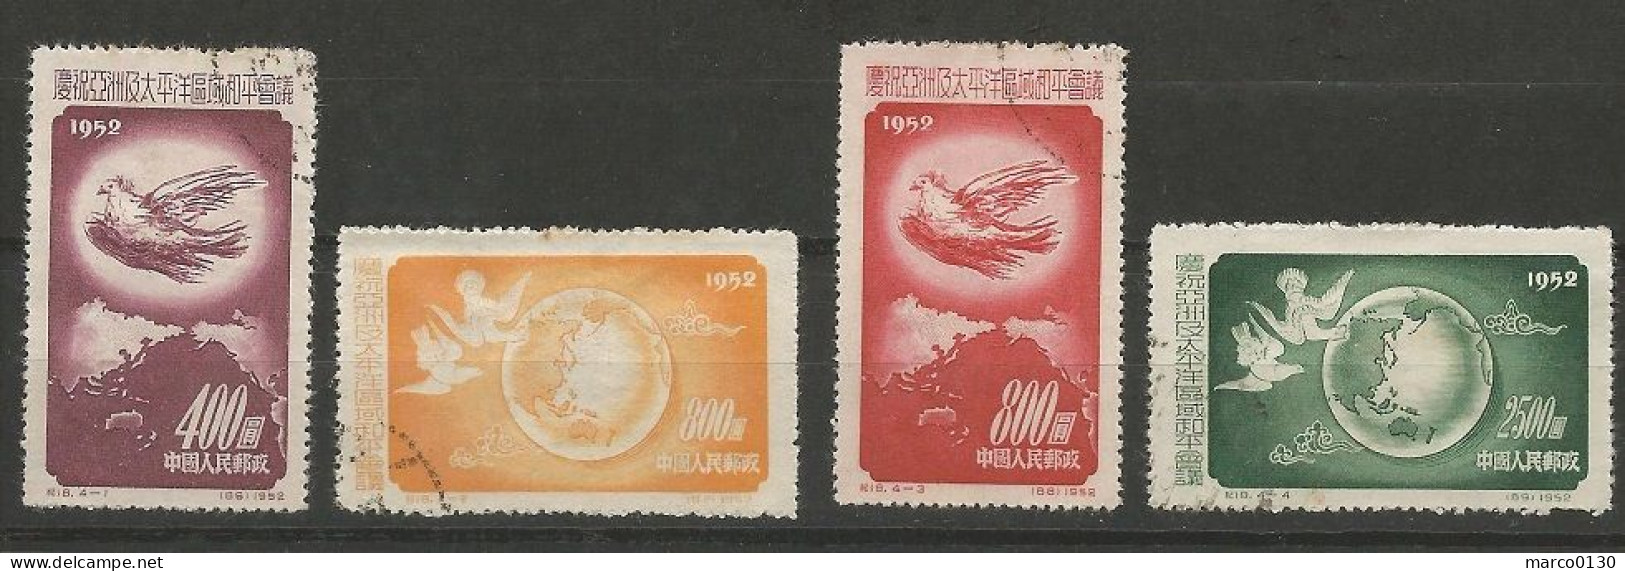 CHINE N° 959 + N° 960+ N° 961+ N° 962 OBLITERE - Used Stamps